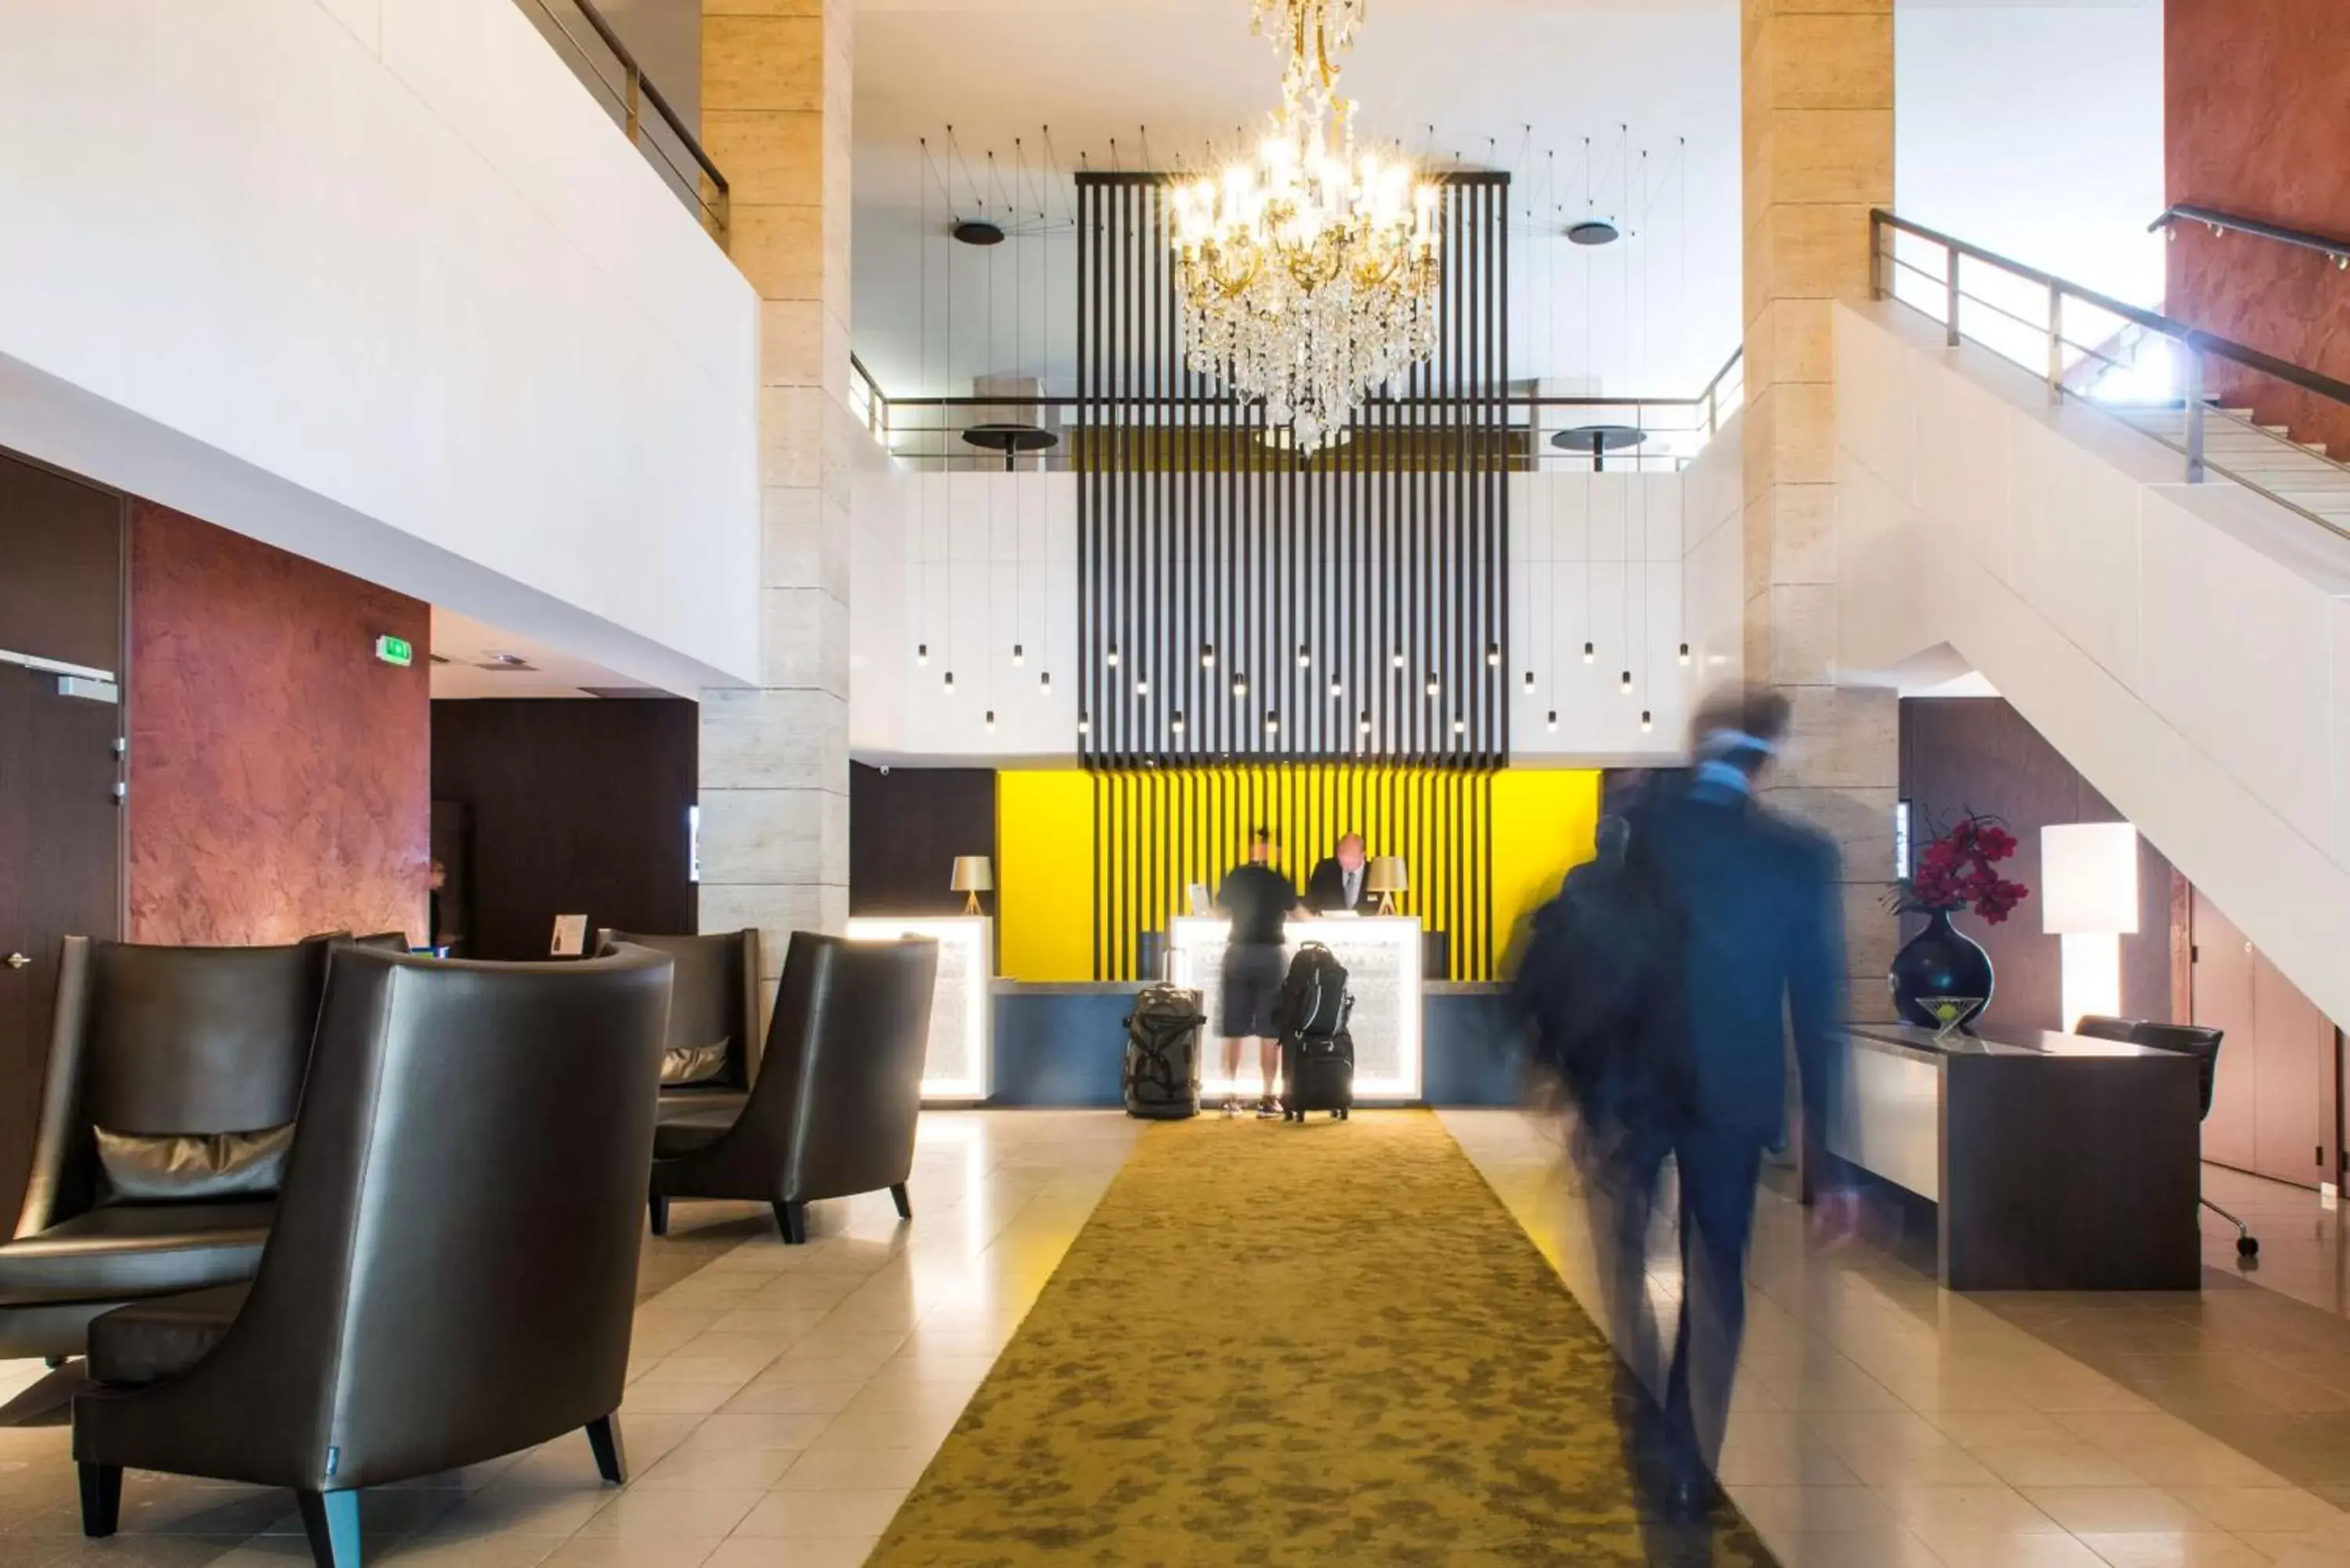 Lobby or reception in Best Western Premier Hotel de la Paix